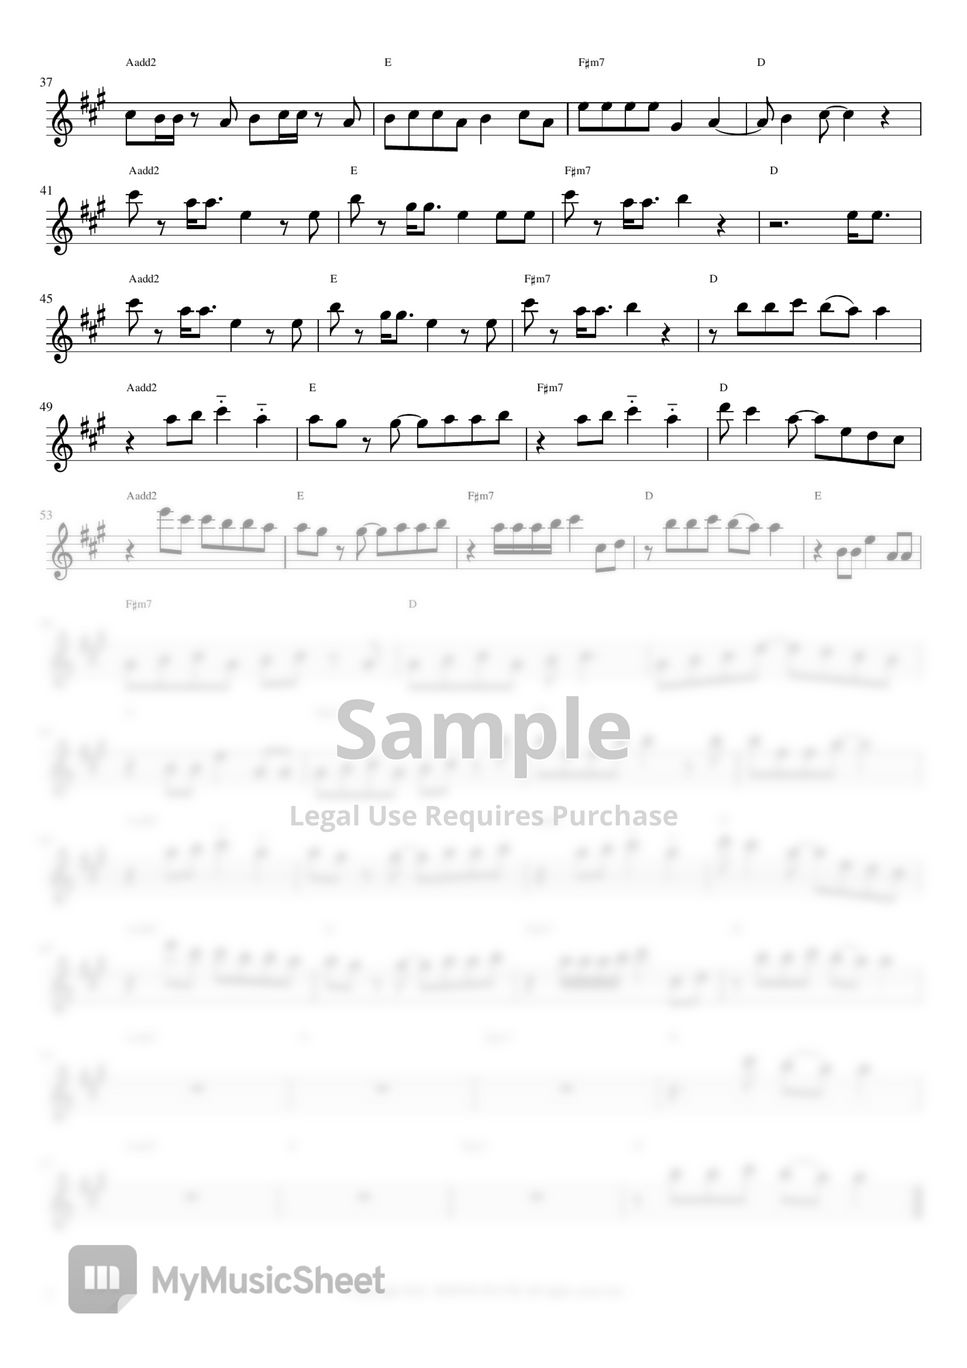 아이유(IU) - Celebrity (Flute Sheet Music) by SONYE FLUTE